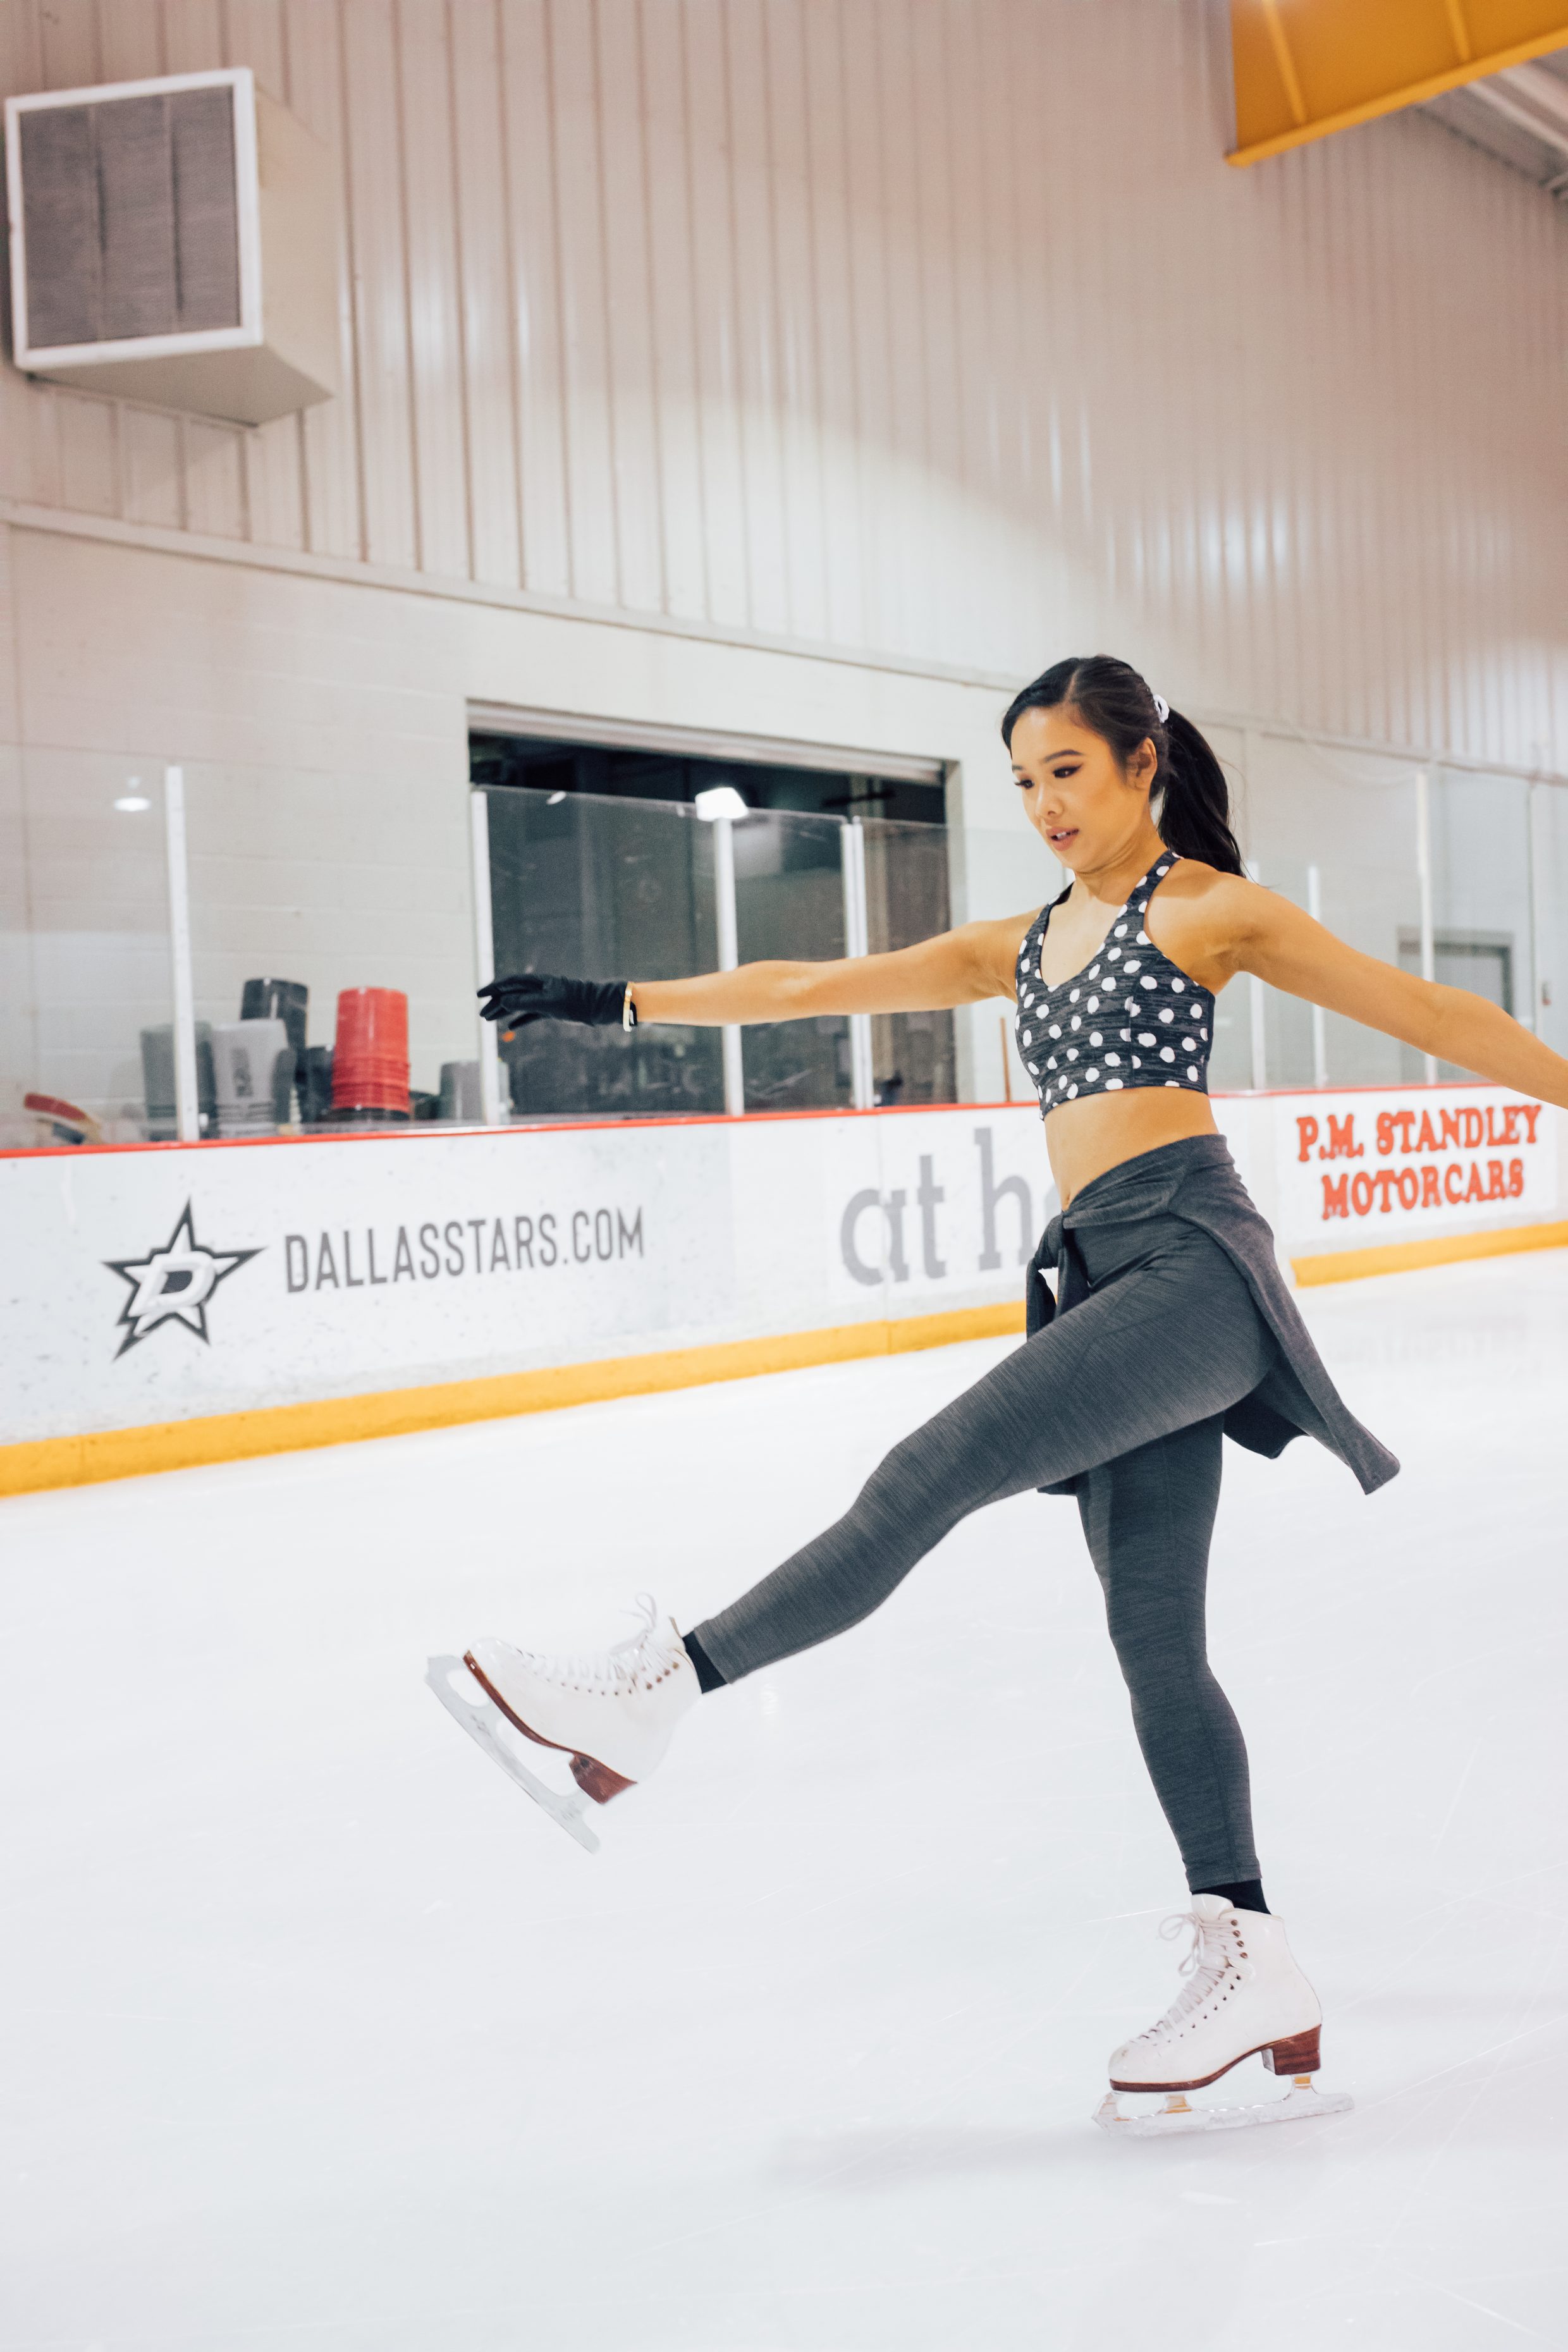 Figure skater wearing polka dot activewear at a Dallas Ice skating rink